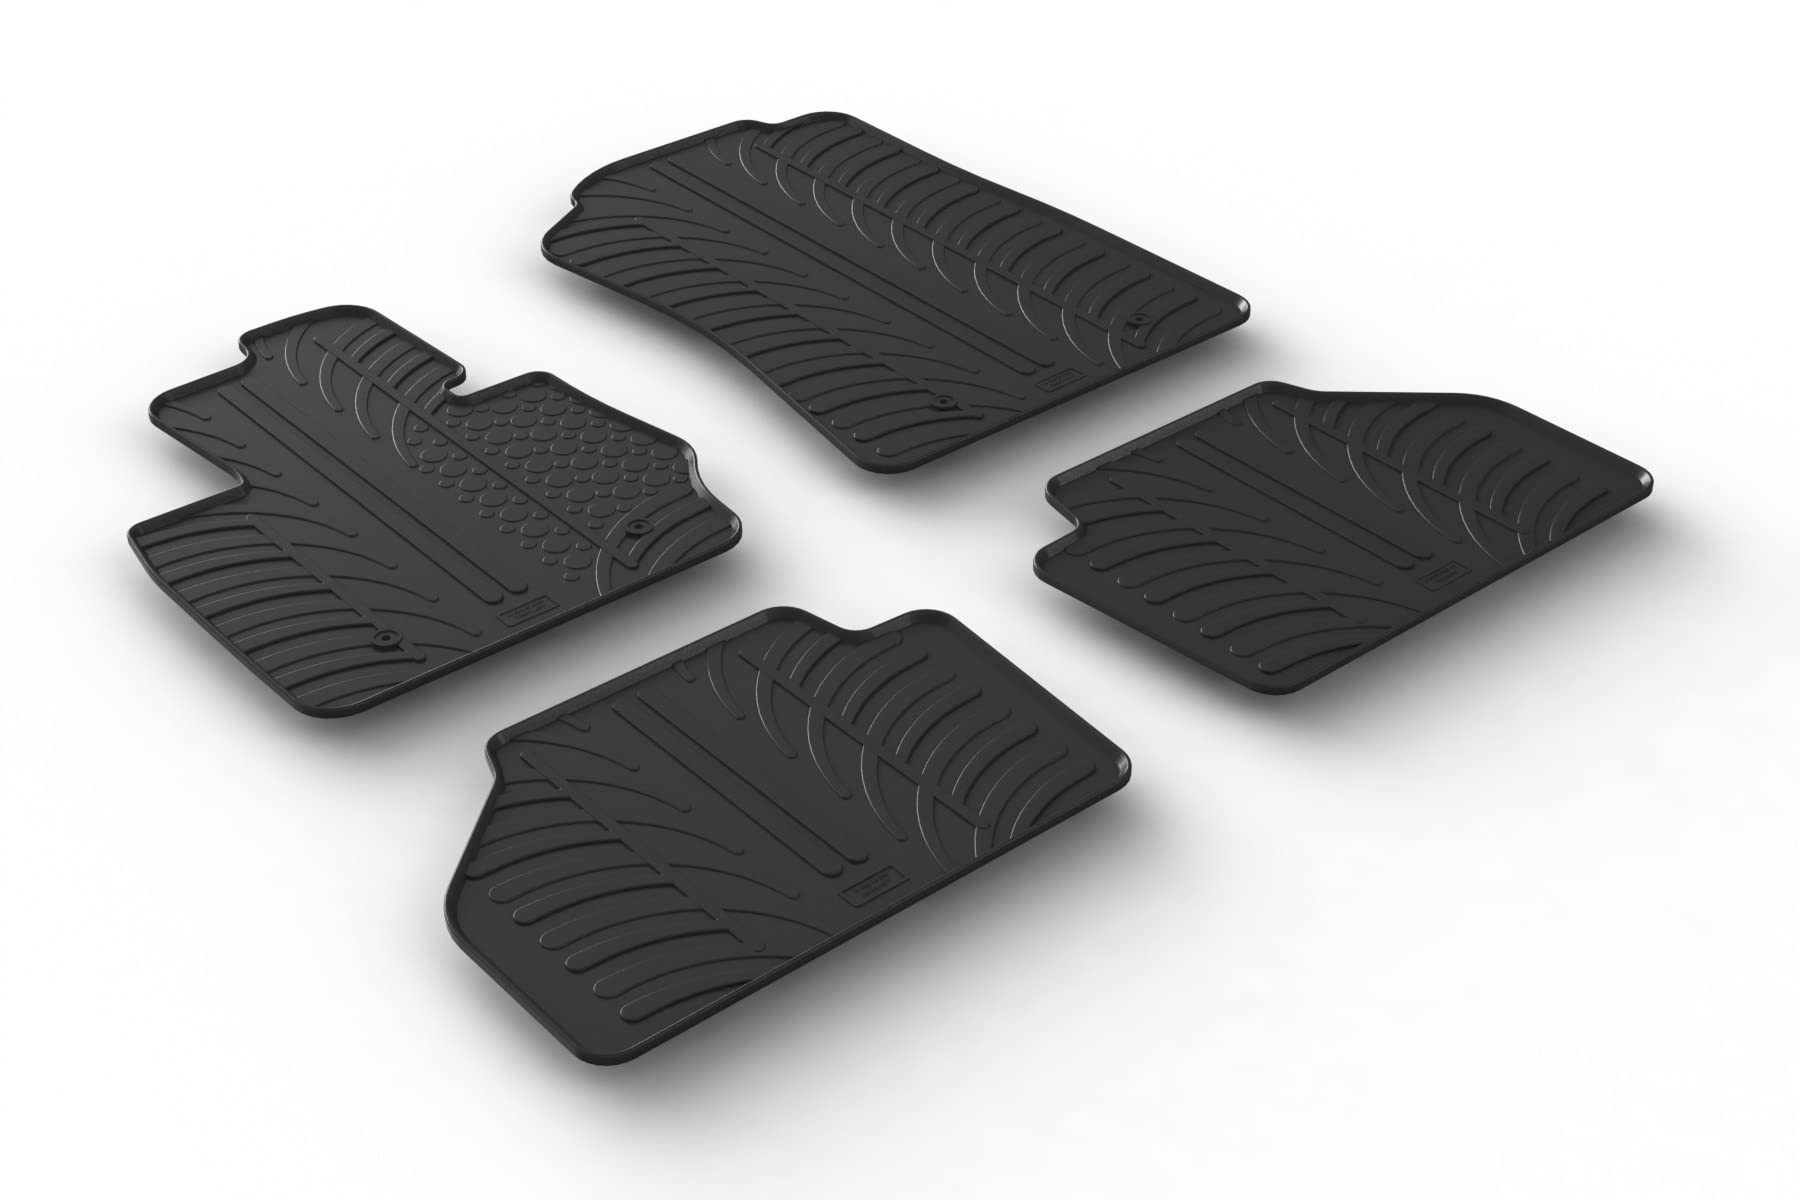 AROBA GL0357 Design Gummi Fußmatten kompatibel mit BMW X3 F25 BJ. 11.2010-09.2017 erhöhter Rand 4 TLG Farbe Schwarz Gummimatten Automatten passgenau von AROBA